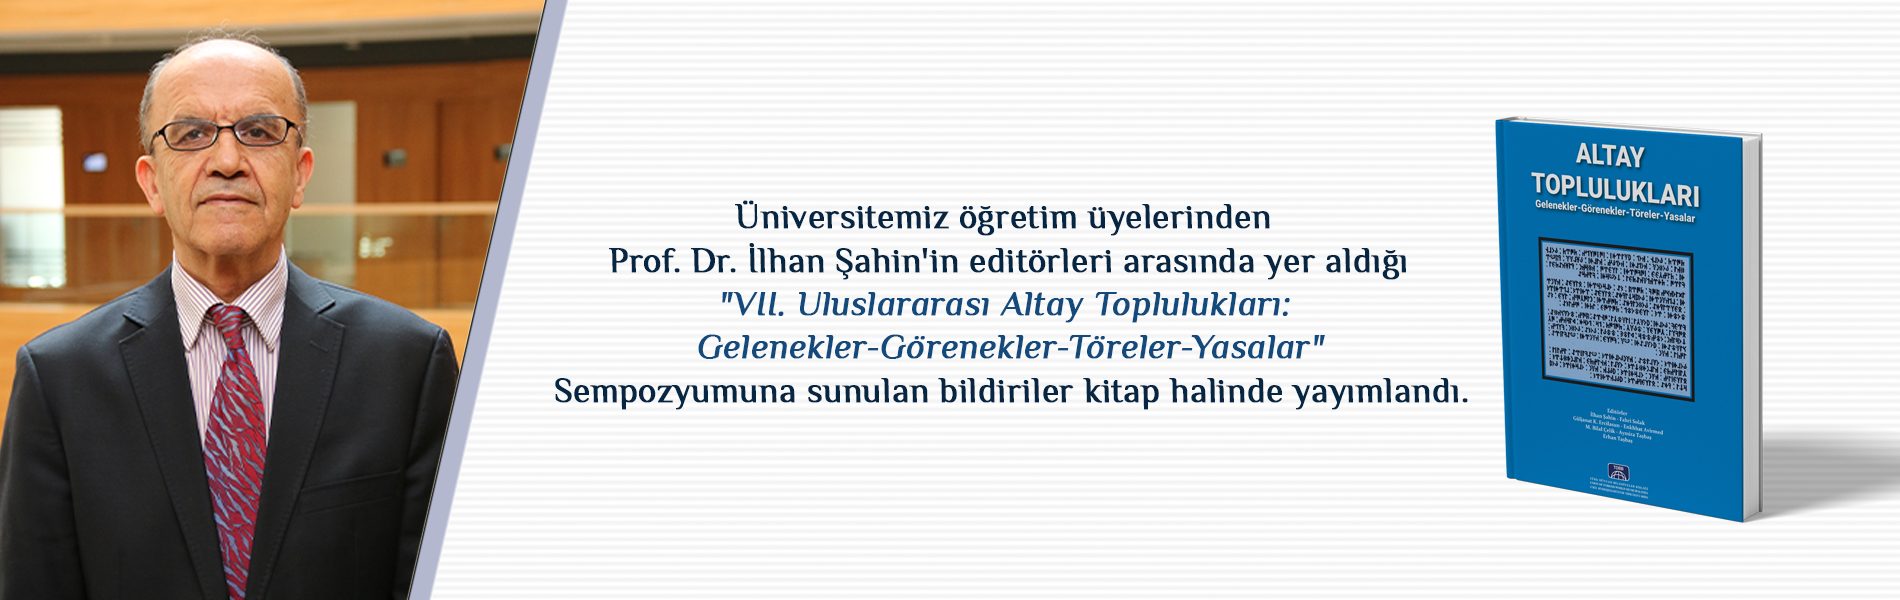 Prof. Dr. İlhan Şahin’in Editörleri Arasında Yer Aldığı VII. Uluslararası Altay Toplulukları: Gelenekler-Görenekler-Töreler-Yasalar Sempozyumuna Sunulan Bildiriler Kitap Halinde Yayımlandı